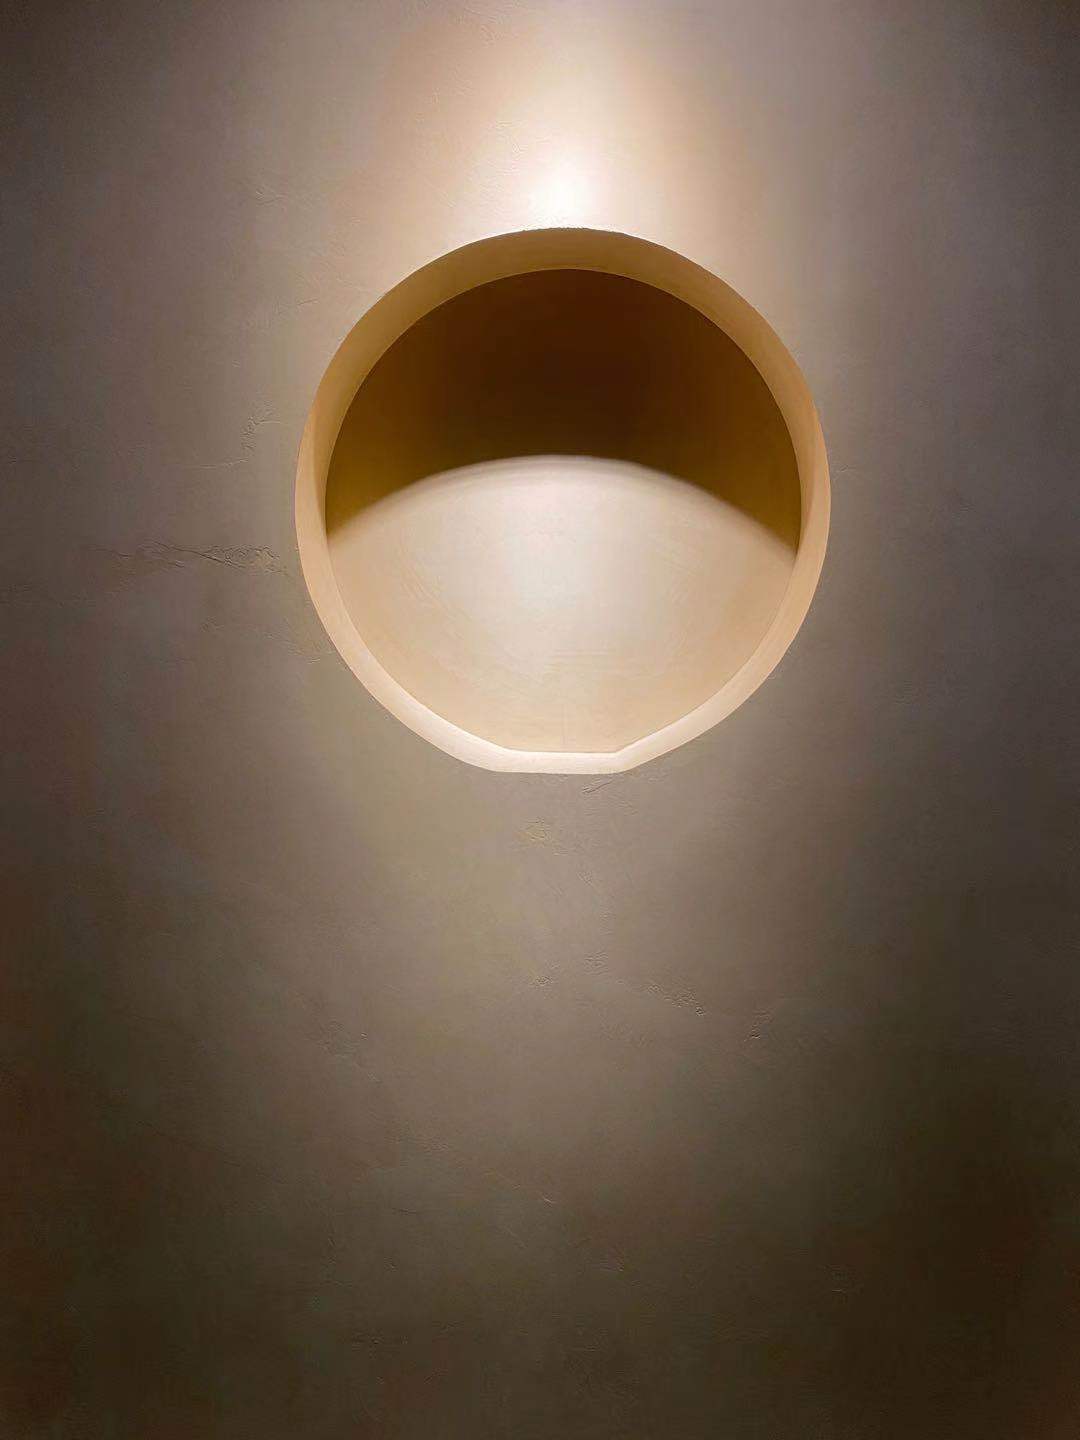 Microcement op de muur van een minimalistische stijl woning met een verlichting die de bekleding versterkt